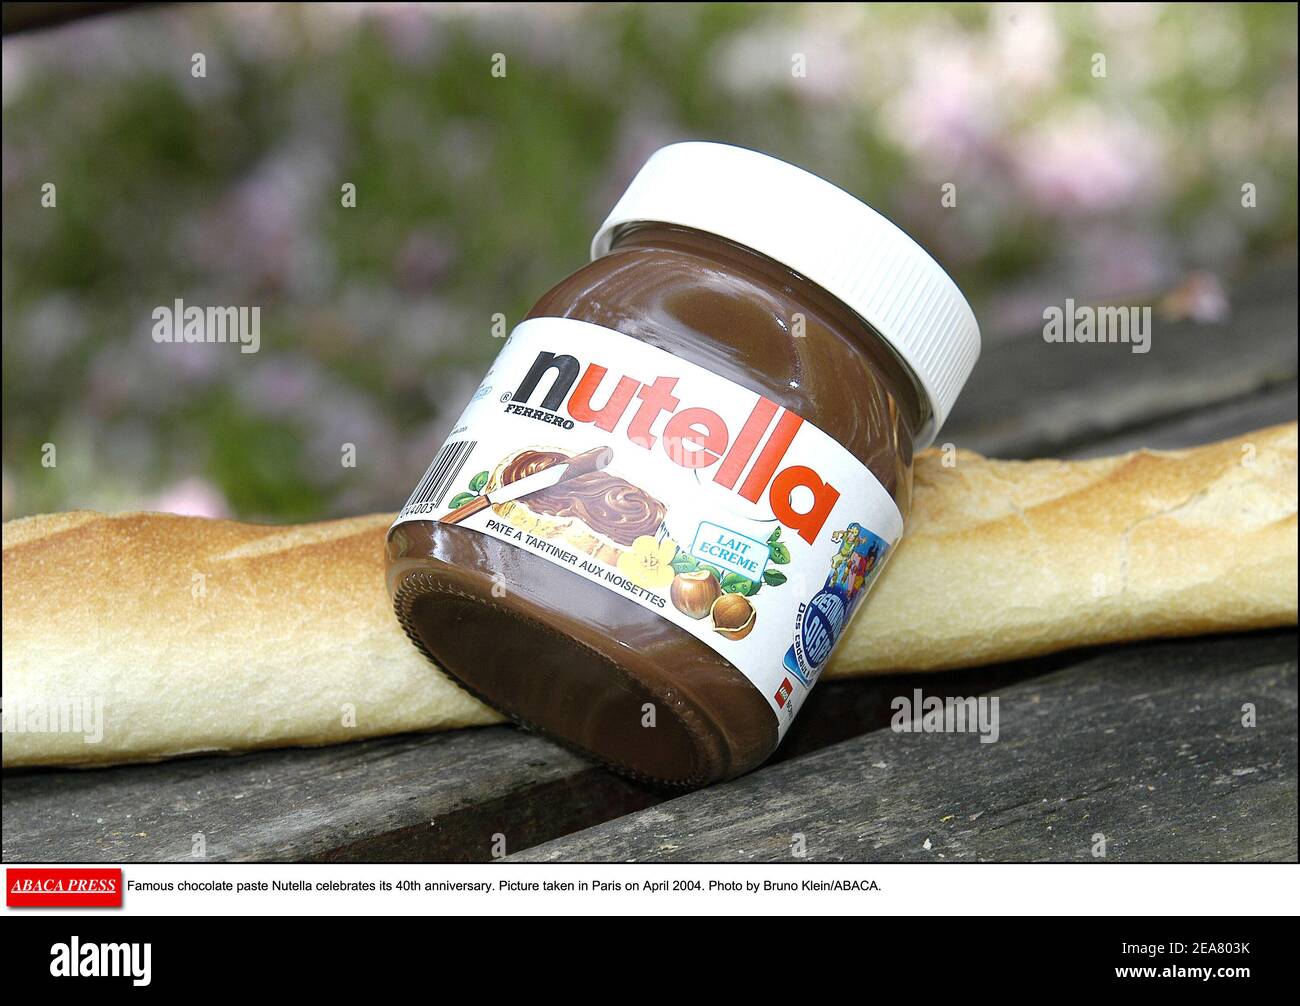 Nutella célèbre pâte de chocolat célèbre son 40e anniversaire. Photo prise à Paris le 2004 avril. Photo de Bruno Klein/ABACA. Banque D'Images